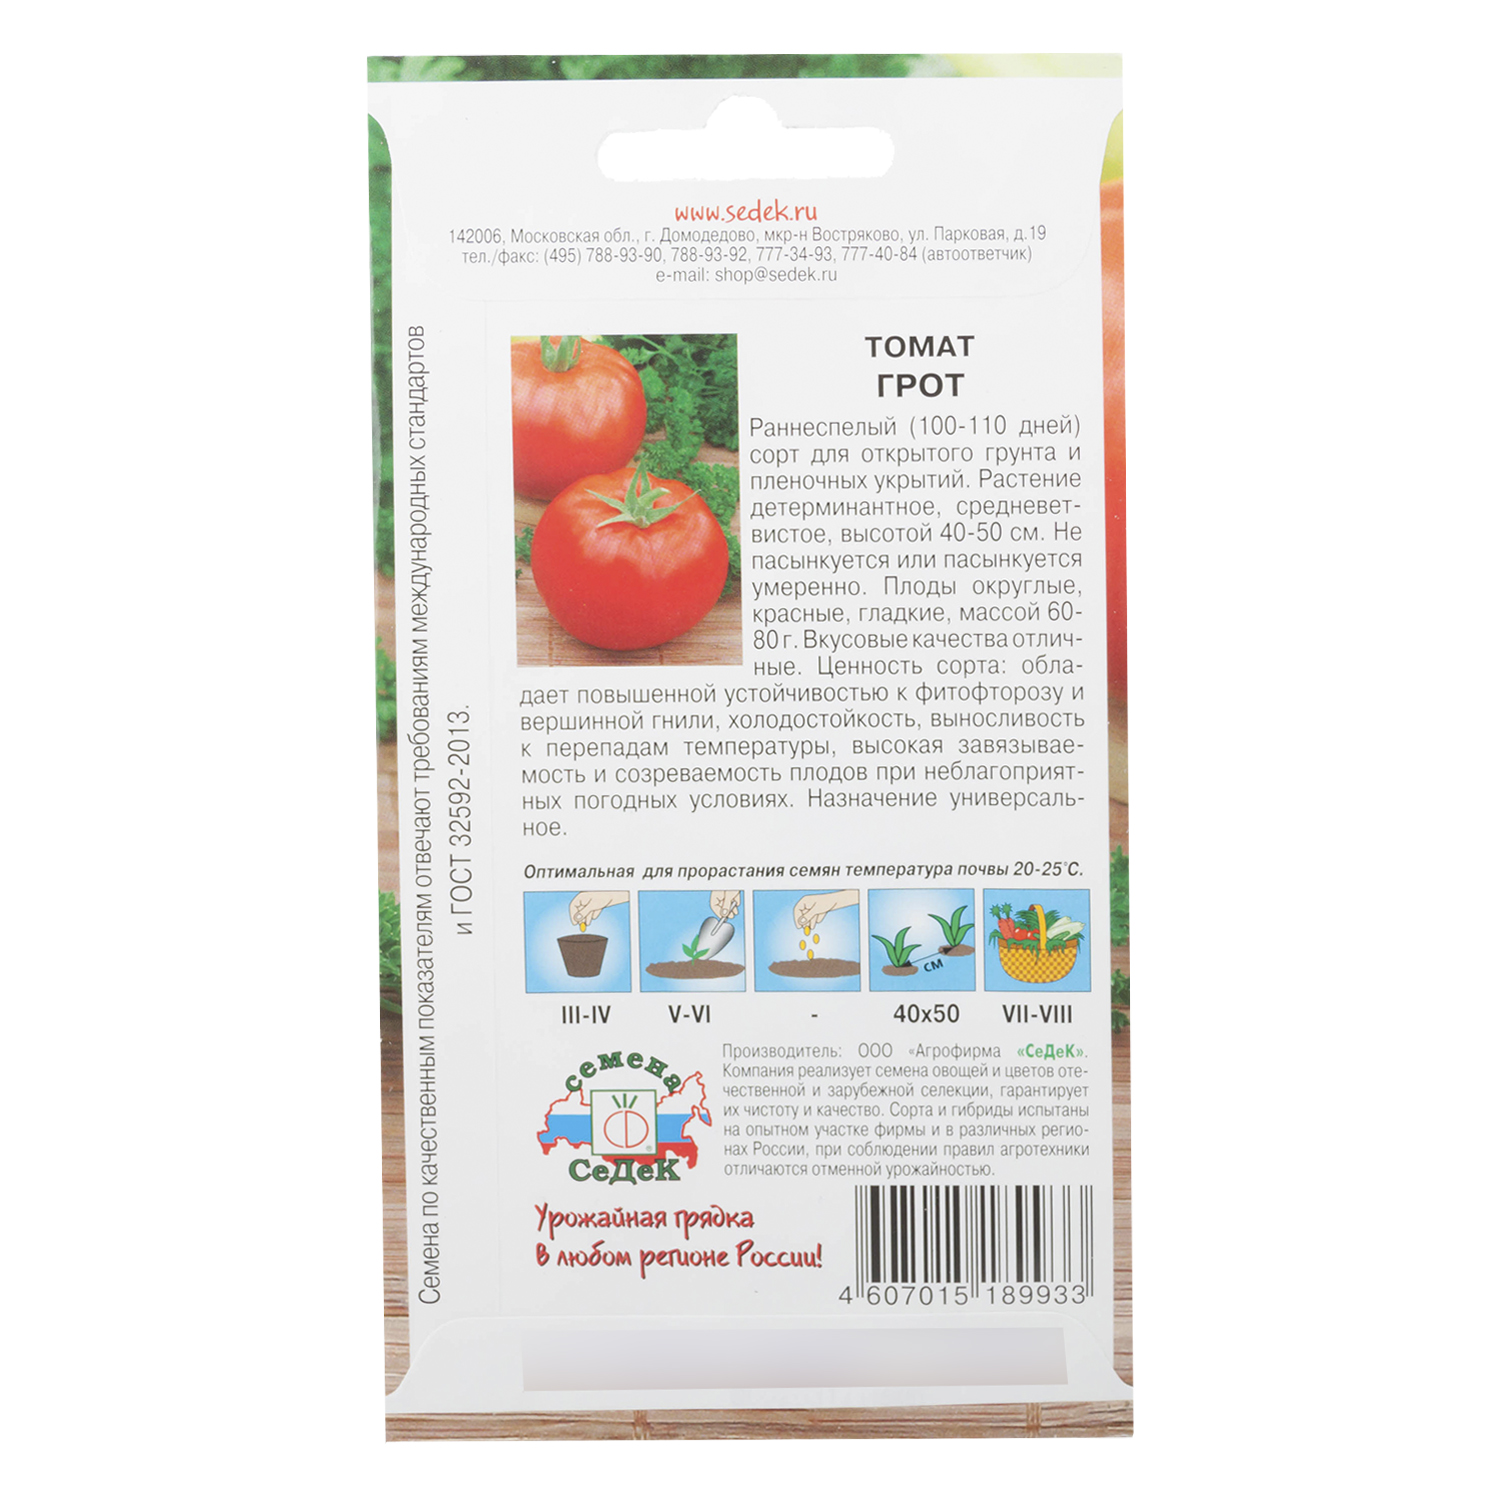 Описание детерминантного сорта томата Грот и выращивание рассады